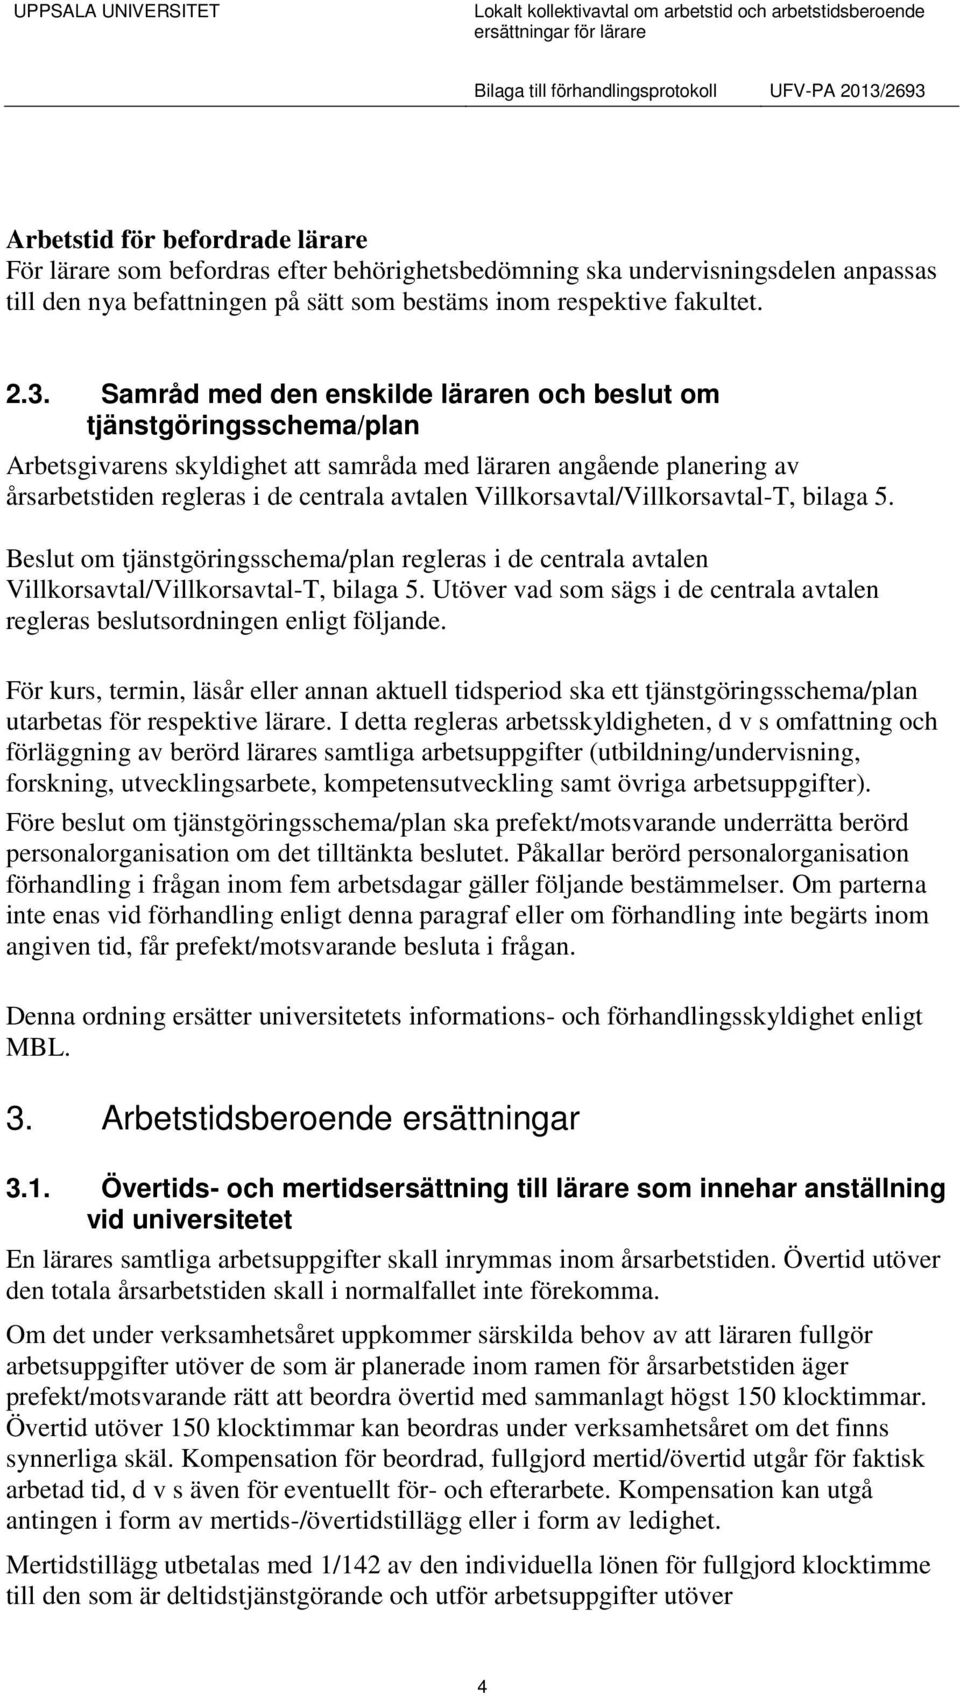 Villkorsavtal/Villkorsavtal-T, bilaga 5. Beslut om tjänstgöringsschema/plan regleras i de centrala avtalen Villkorsavtal/Villkorsavtal-T, bilaga 5.